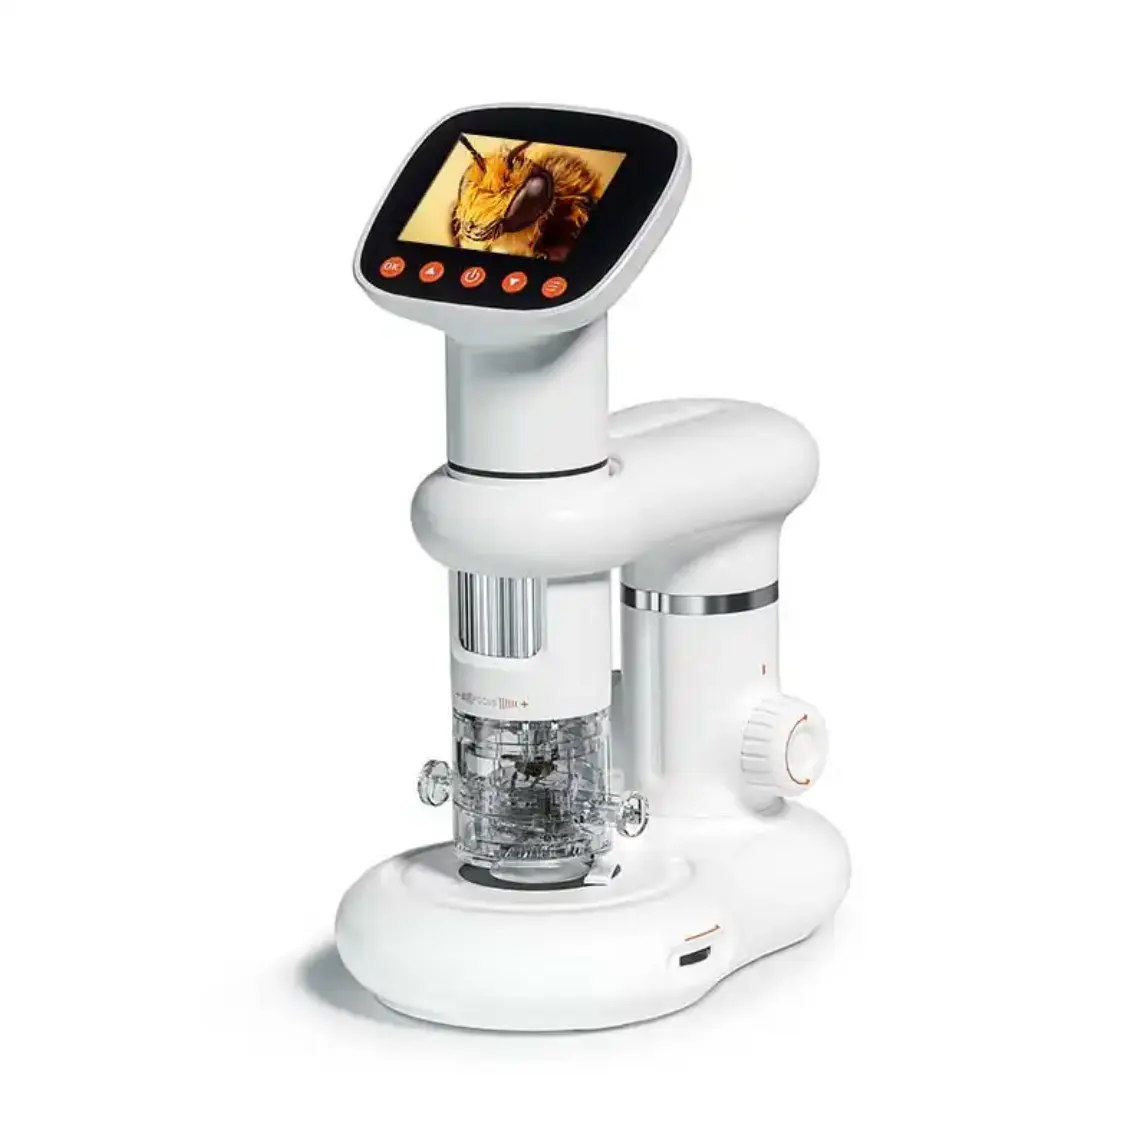 Outil scolaire 2 pouces portable LCD microscope numérique balayage monoculaire Microscopio microscope numérique pour étudiant enfants étude